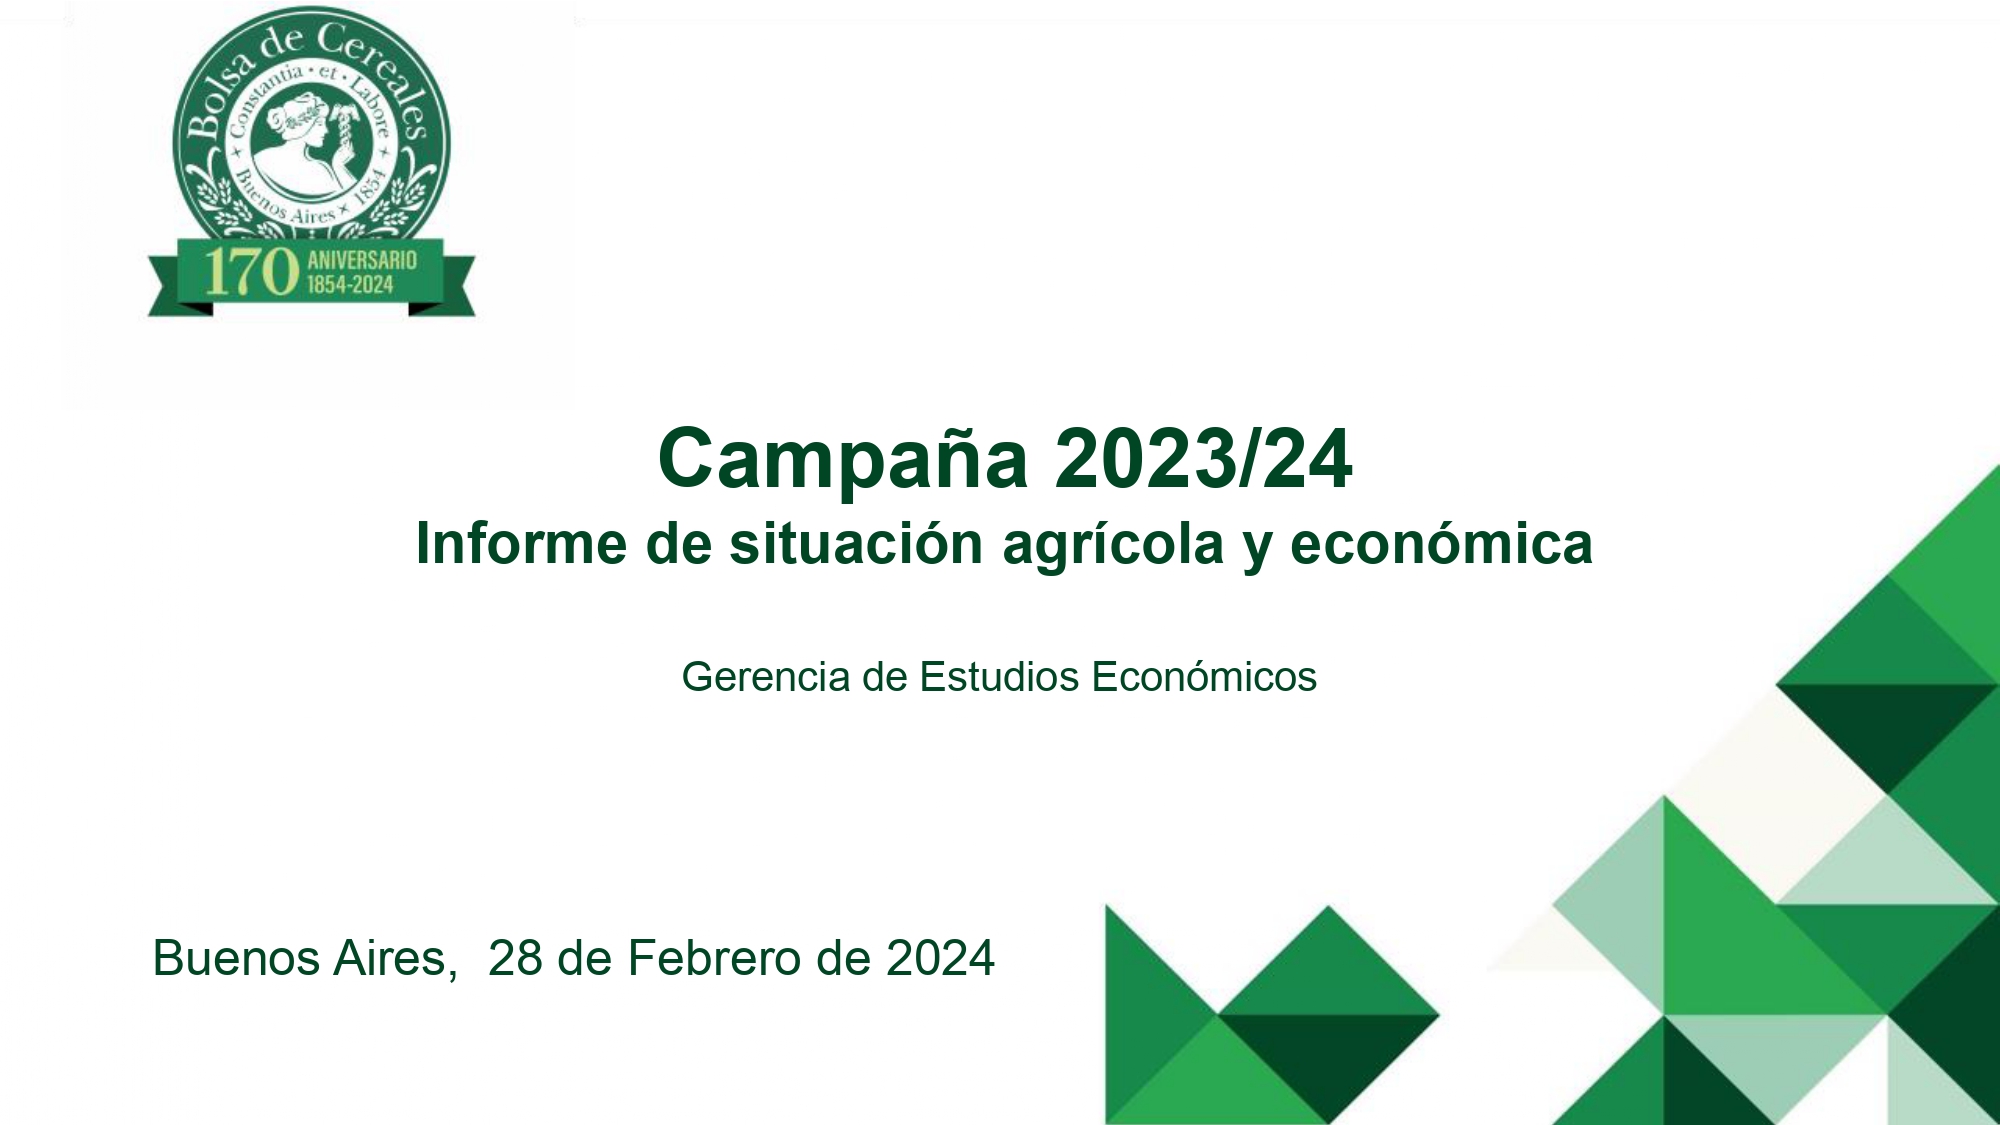 Bolsa De Cereales: Informe de situación agrícola y económica 2023/24